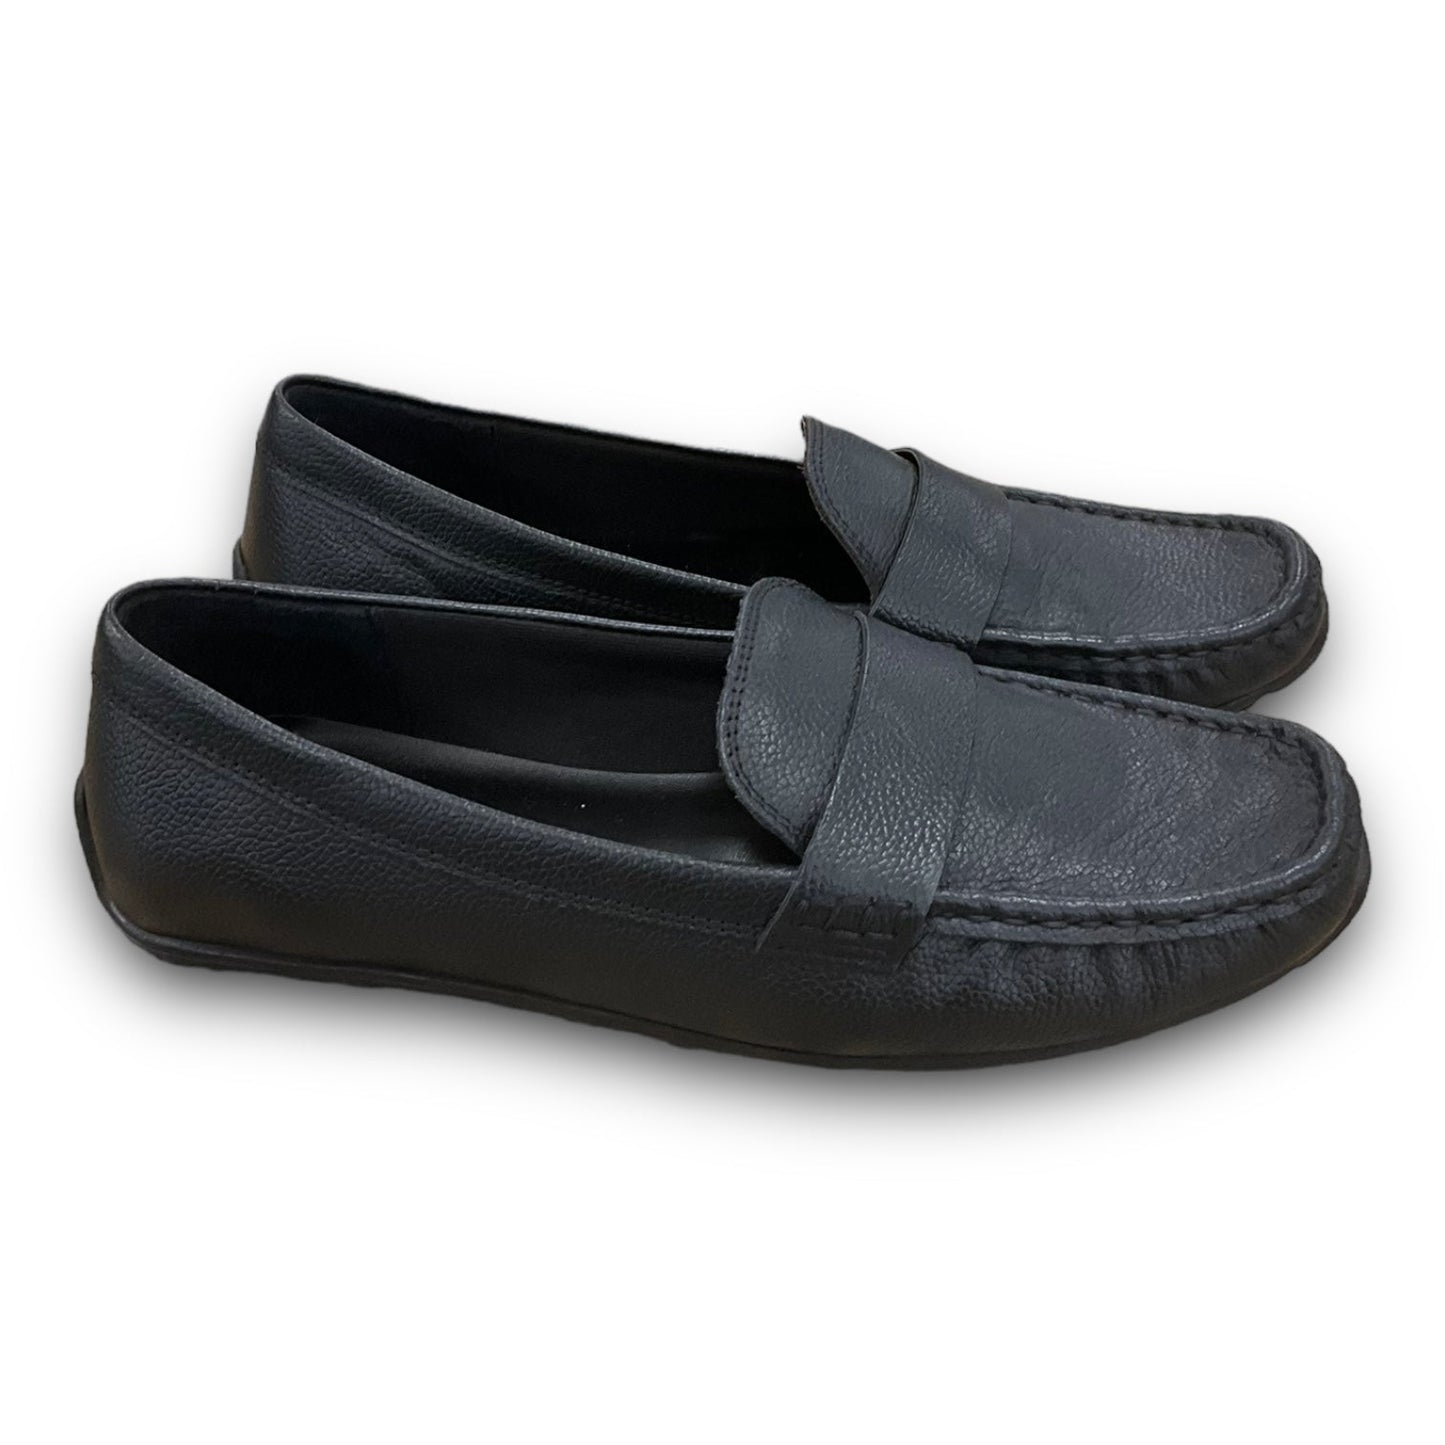 Black Shoes Flats Joie, Size 8.5